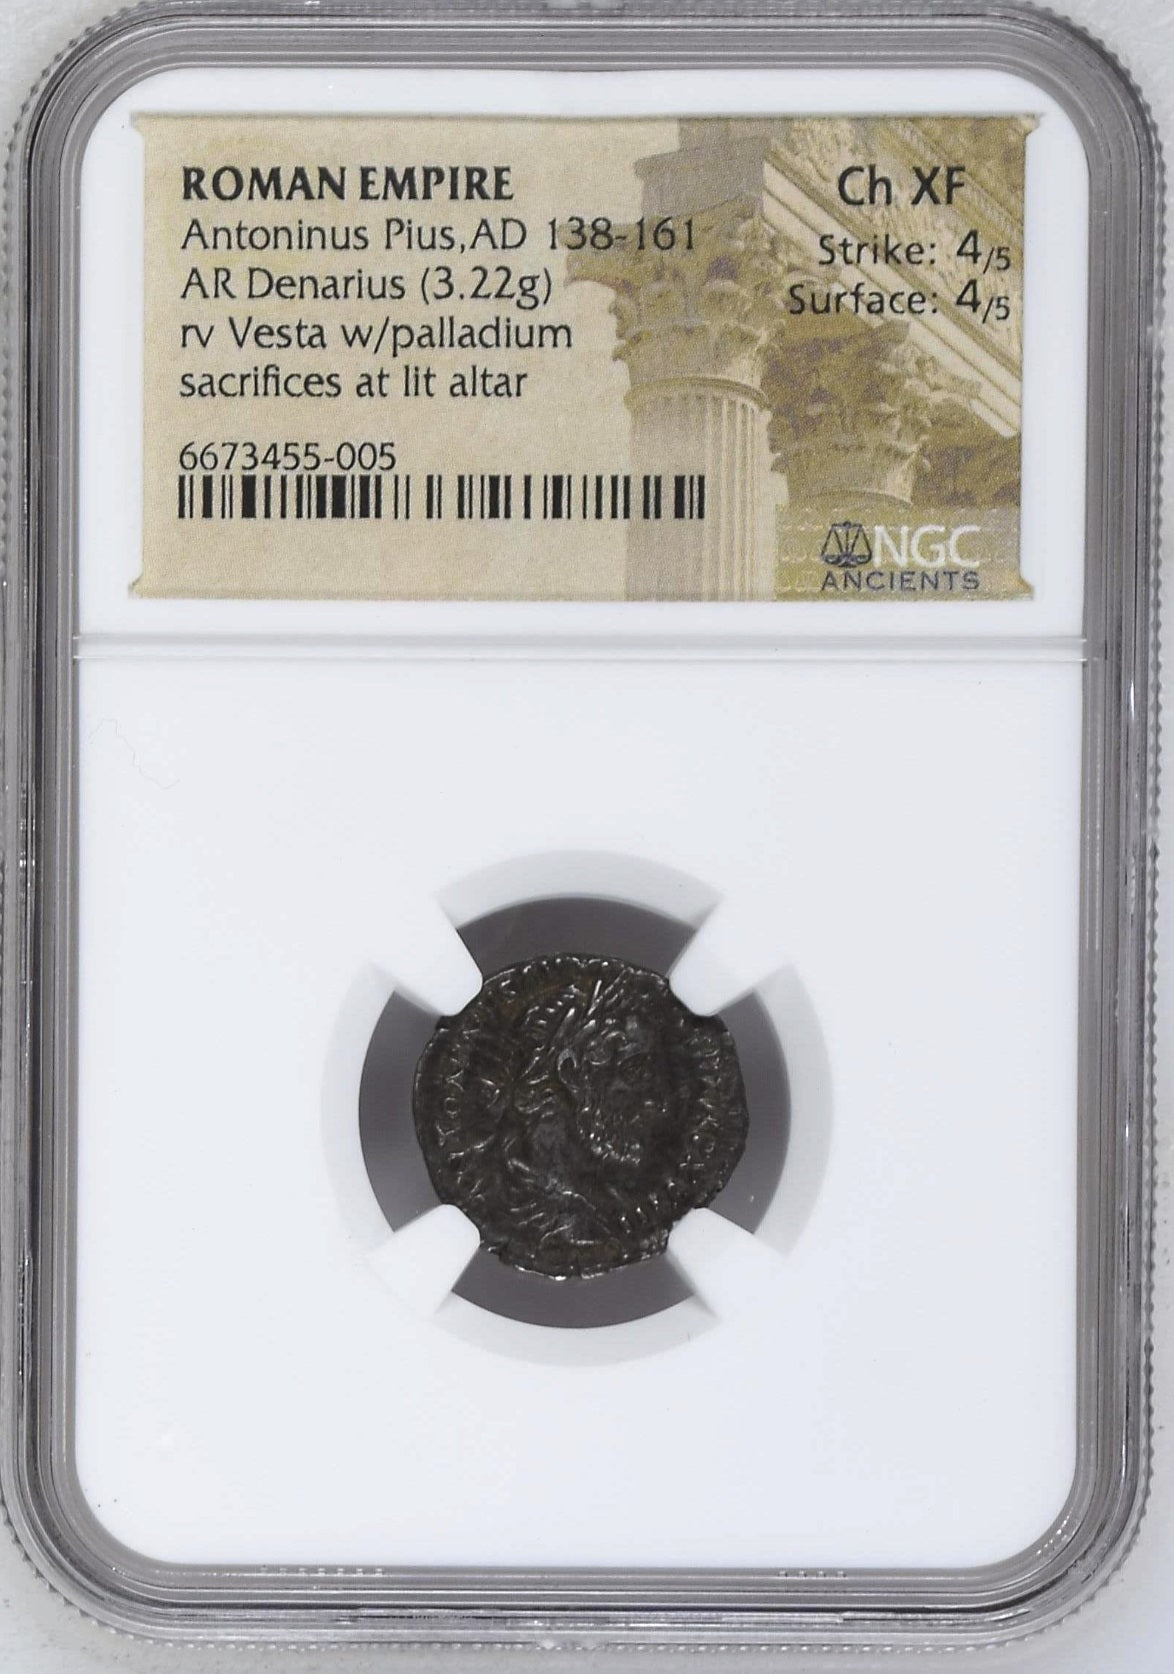 Roman Empire - Antoninus Pius - Silver Denarius - NGC Ch XF - RIC:238